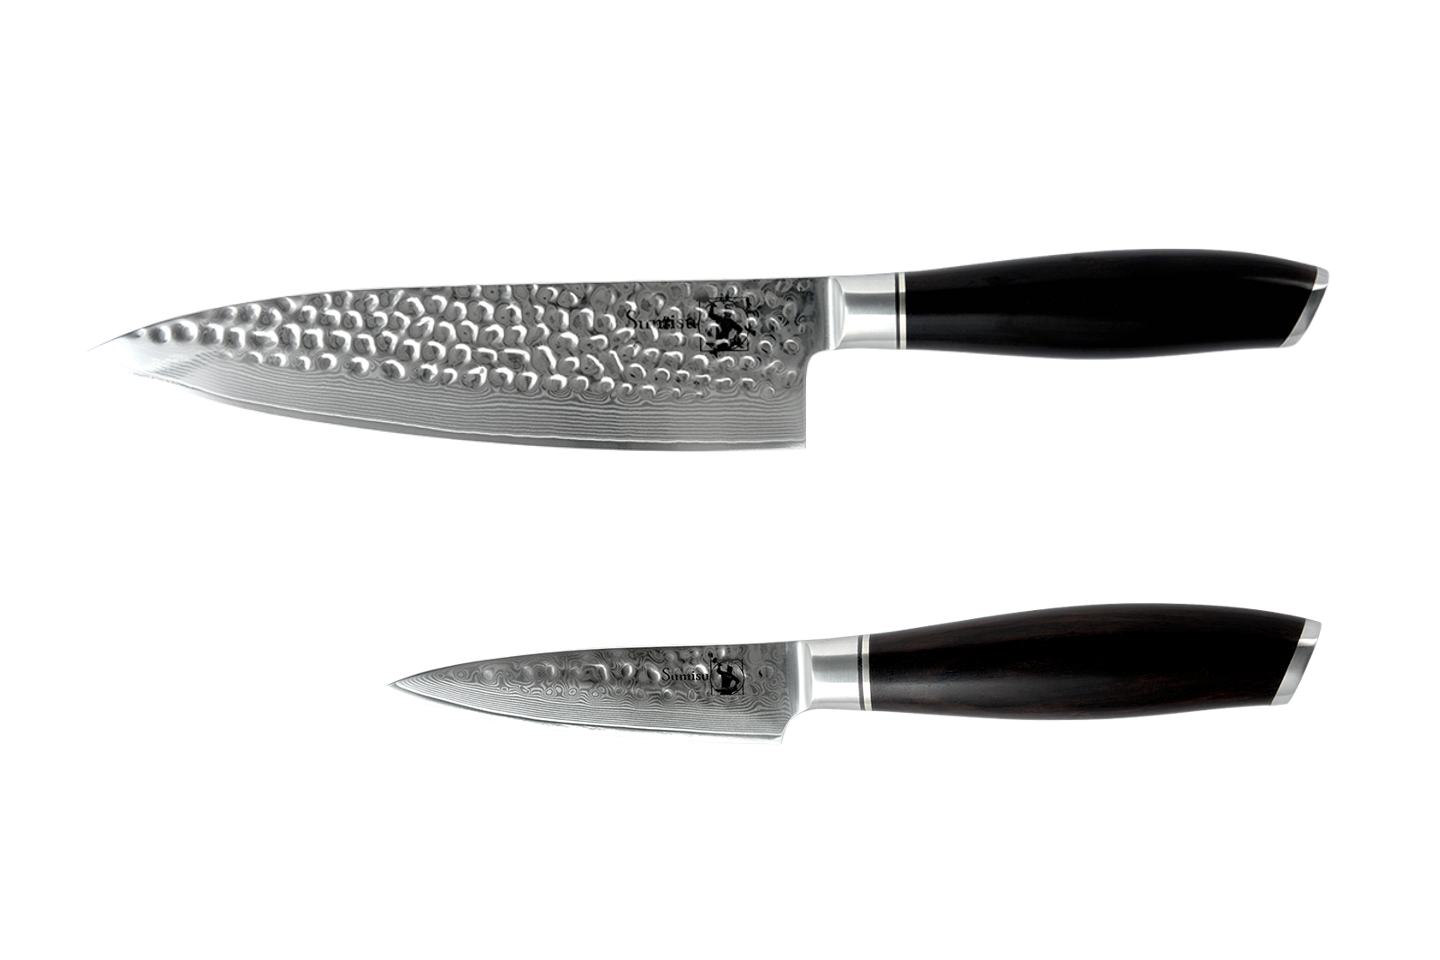 Billede af Sumisu - Kaki knivsæt med 2 køkkenknive - Startersættet - 67 Lags Damaskusstål - Sort, damaskus stål, blank